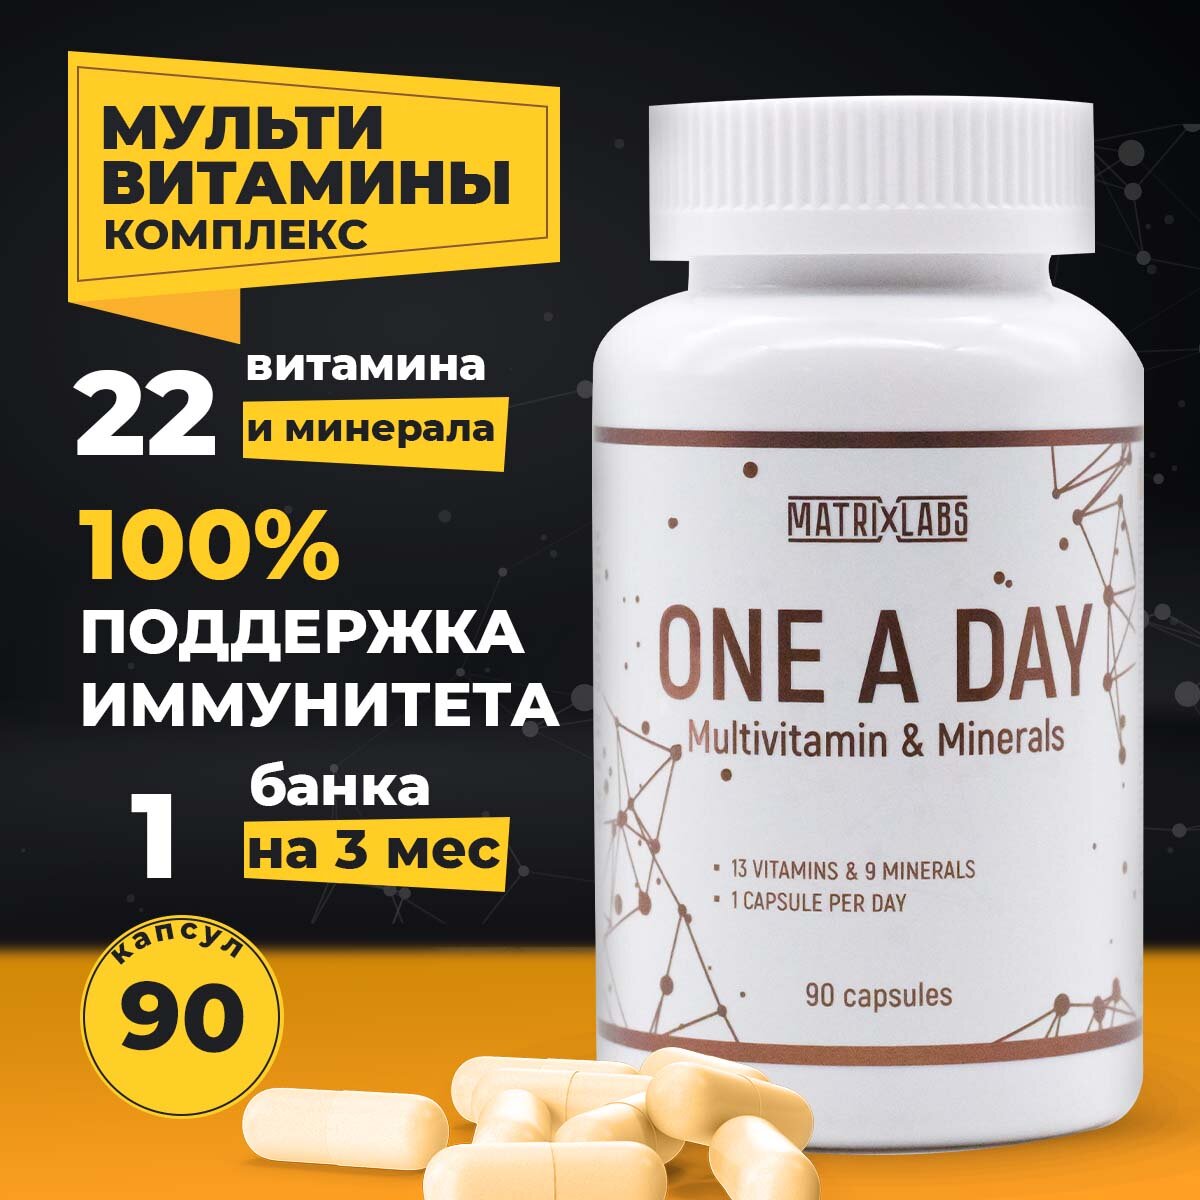 Мультивитамины One A Day 90 капсул Matrix Labs, витаминный и минеральный комплекс, для имунной системы, витамины для женщин и мужчин